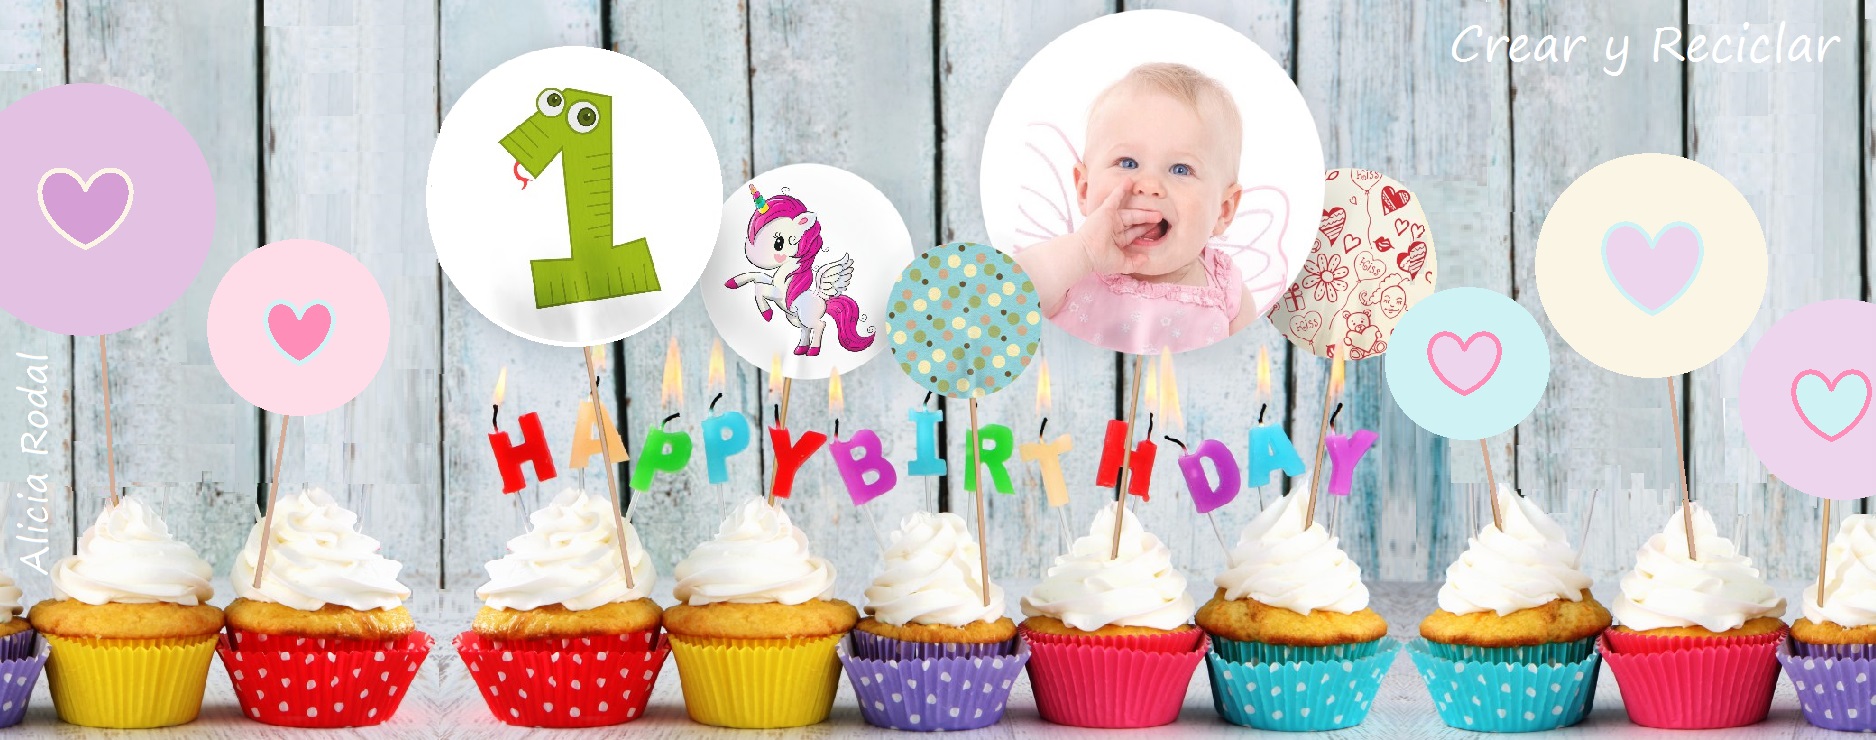 Cómo organizar una fiesta de cumpleaños infantil en casa - Blog MiCuento